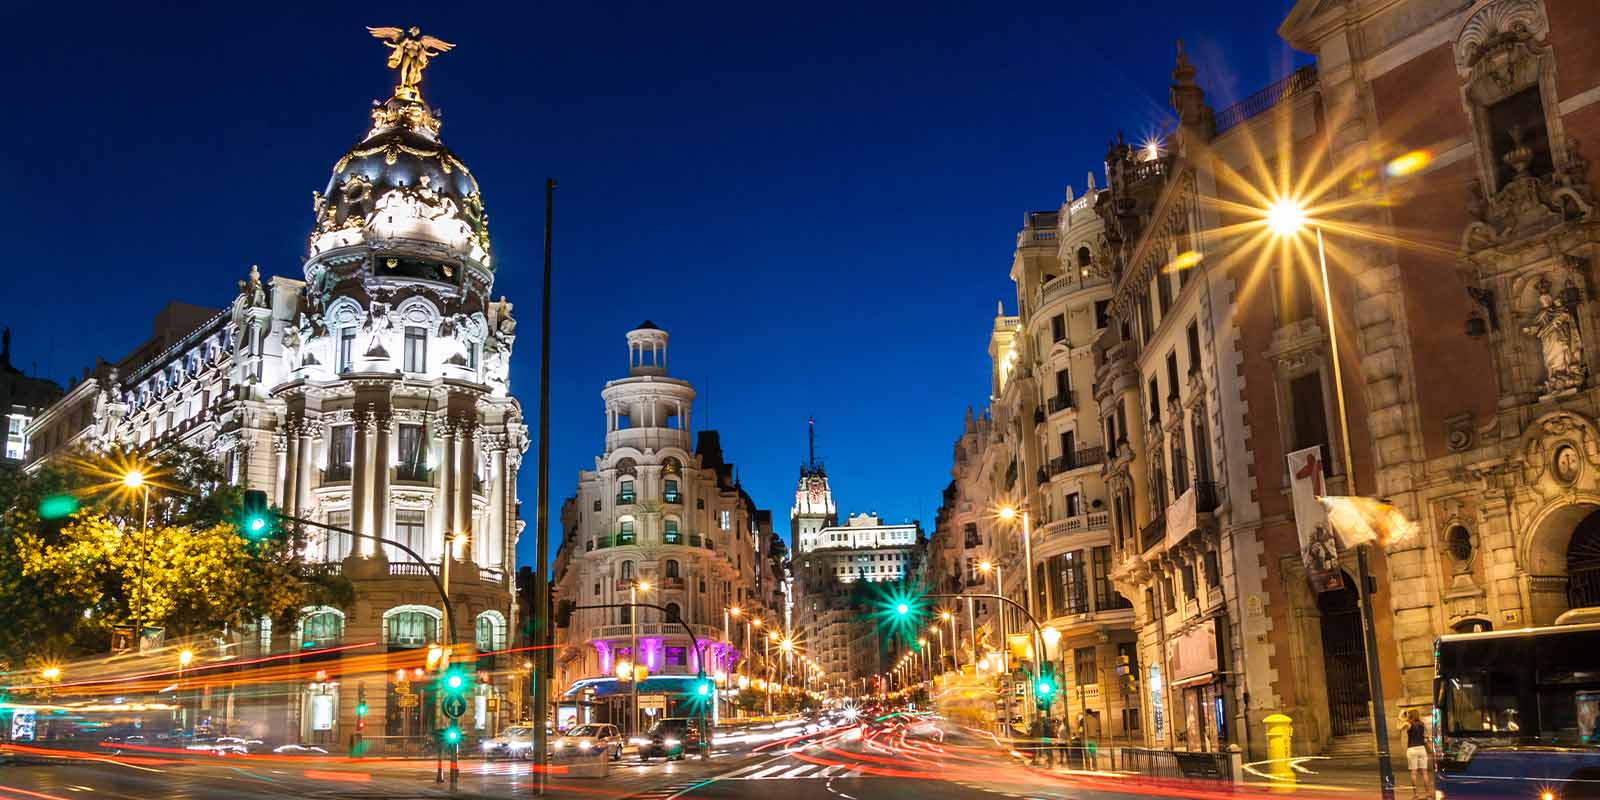 Madrid - Spain